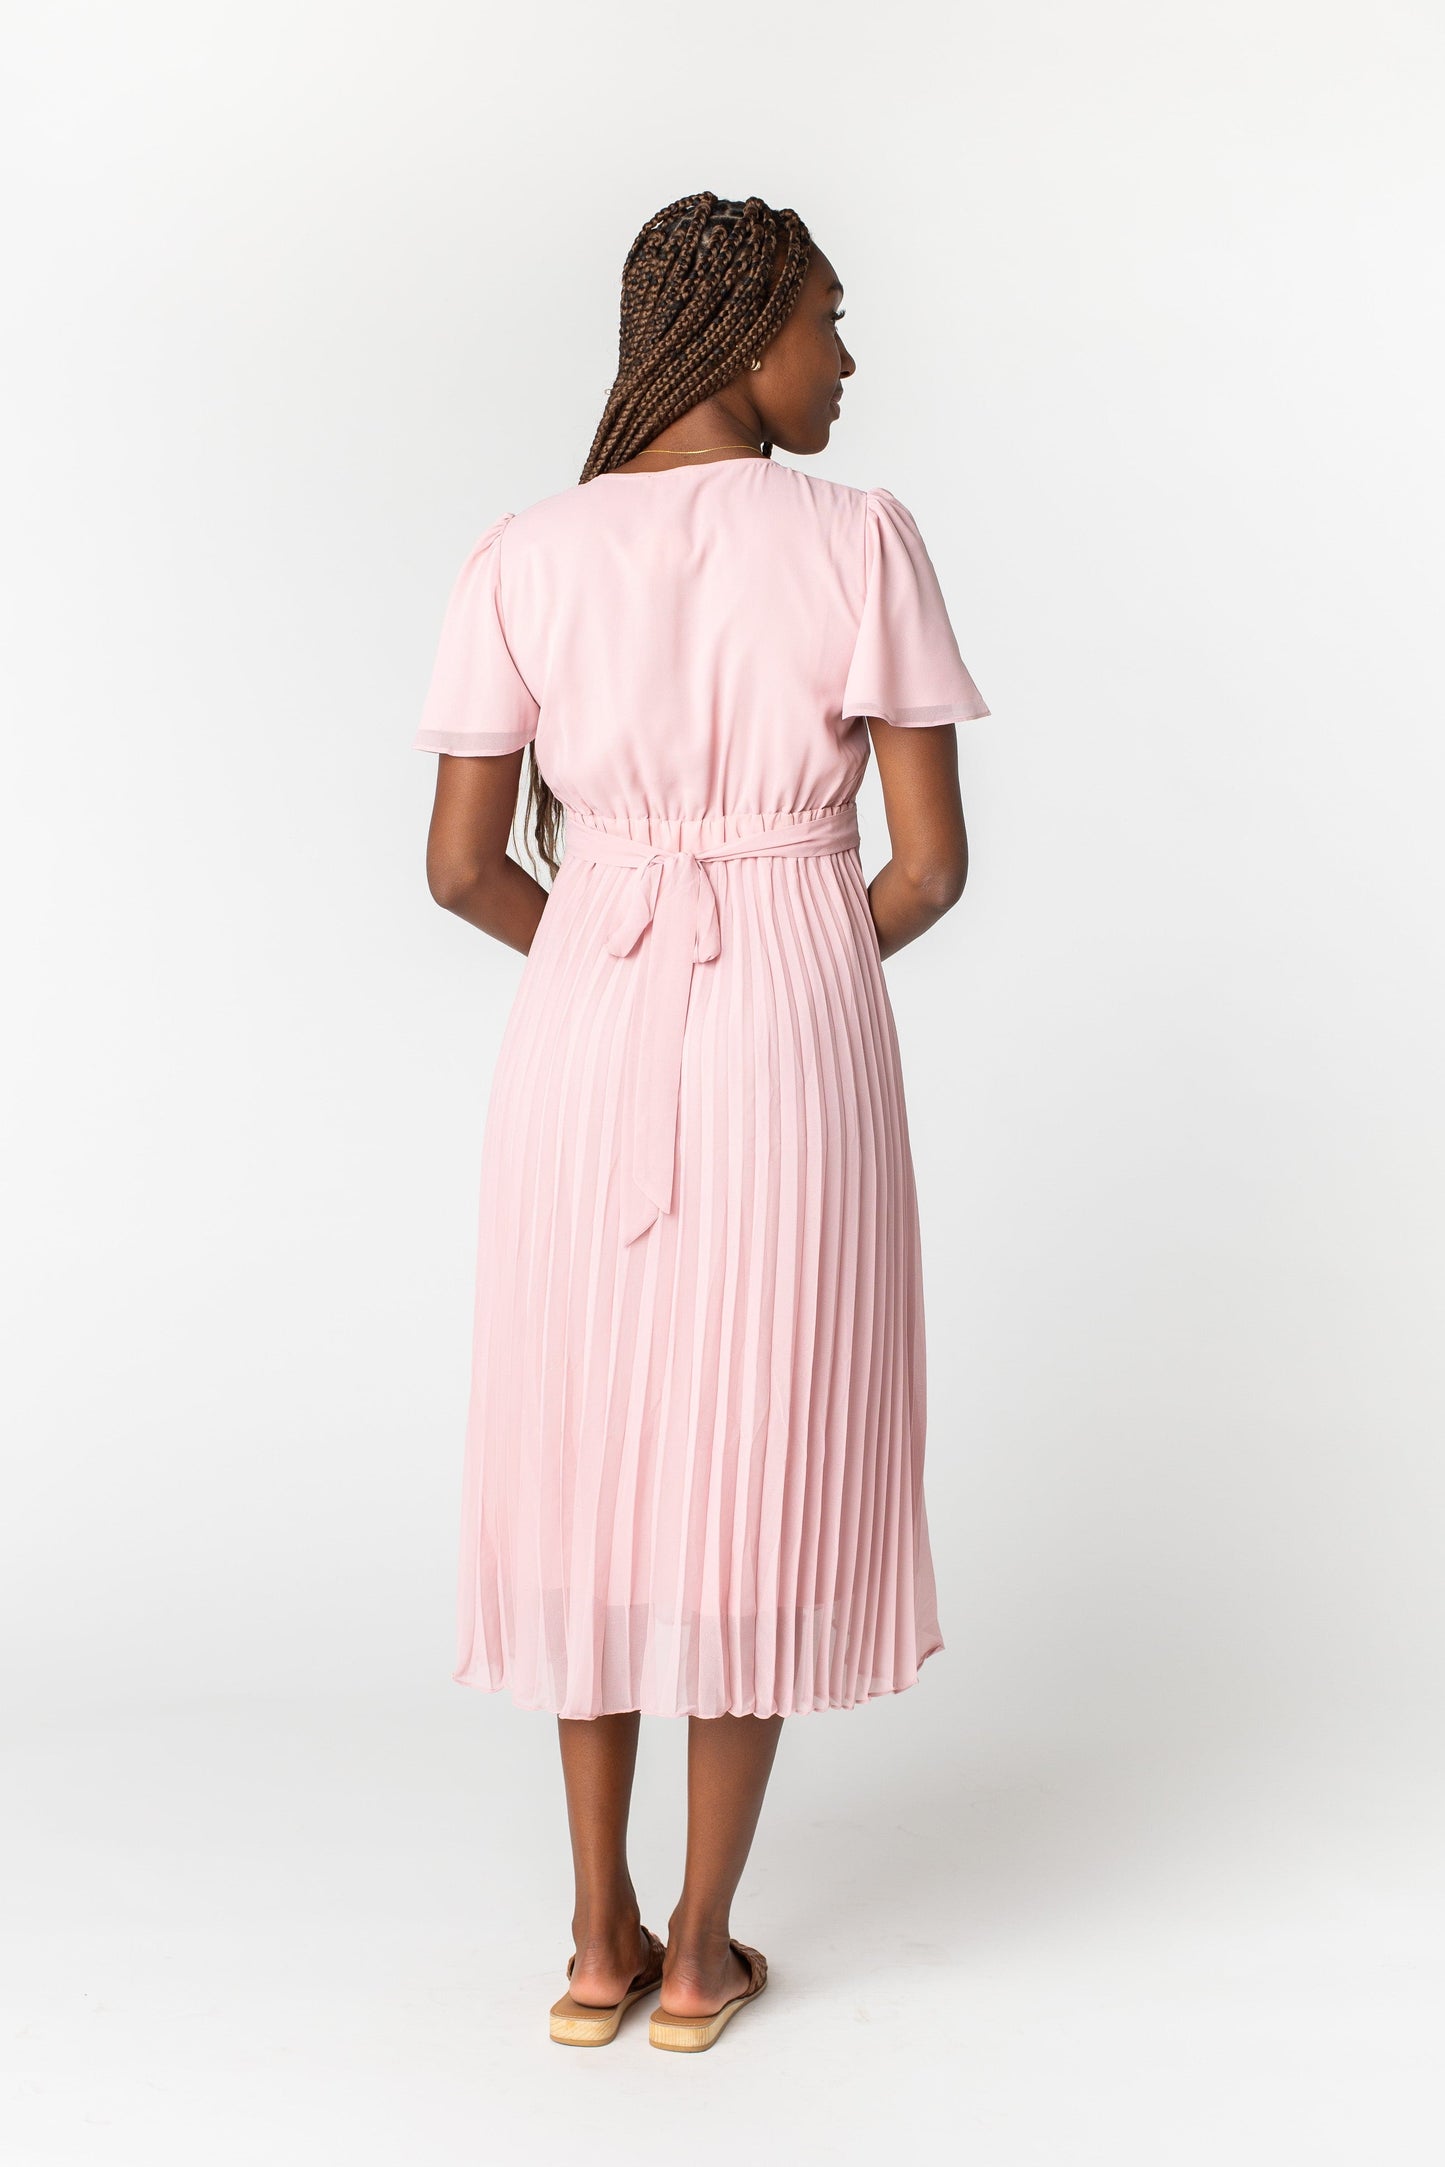 All Blush Pleated Skirt Dress WOMEN'S DRESS Tea N Rose 